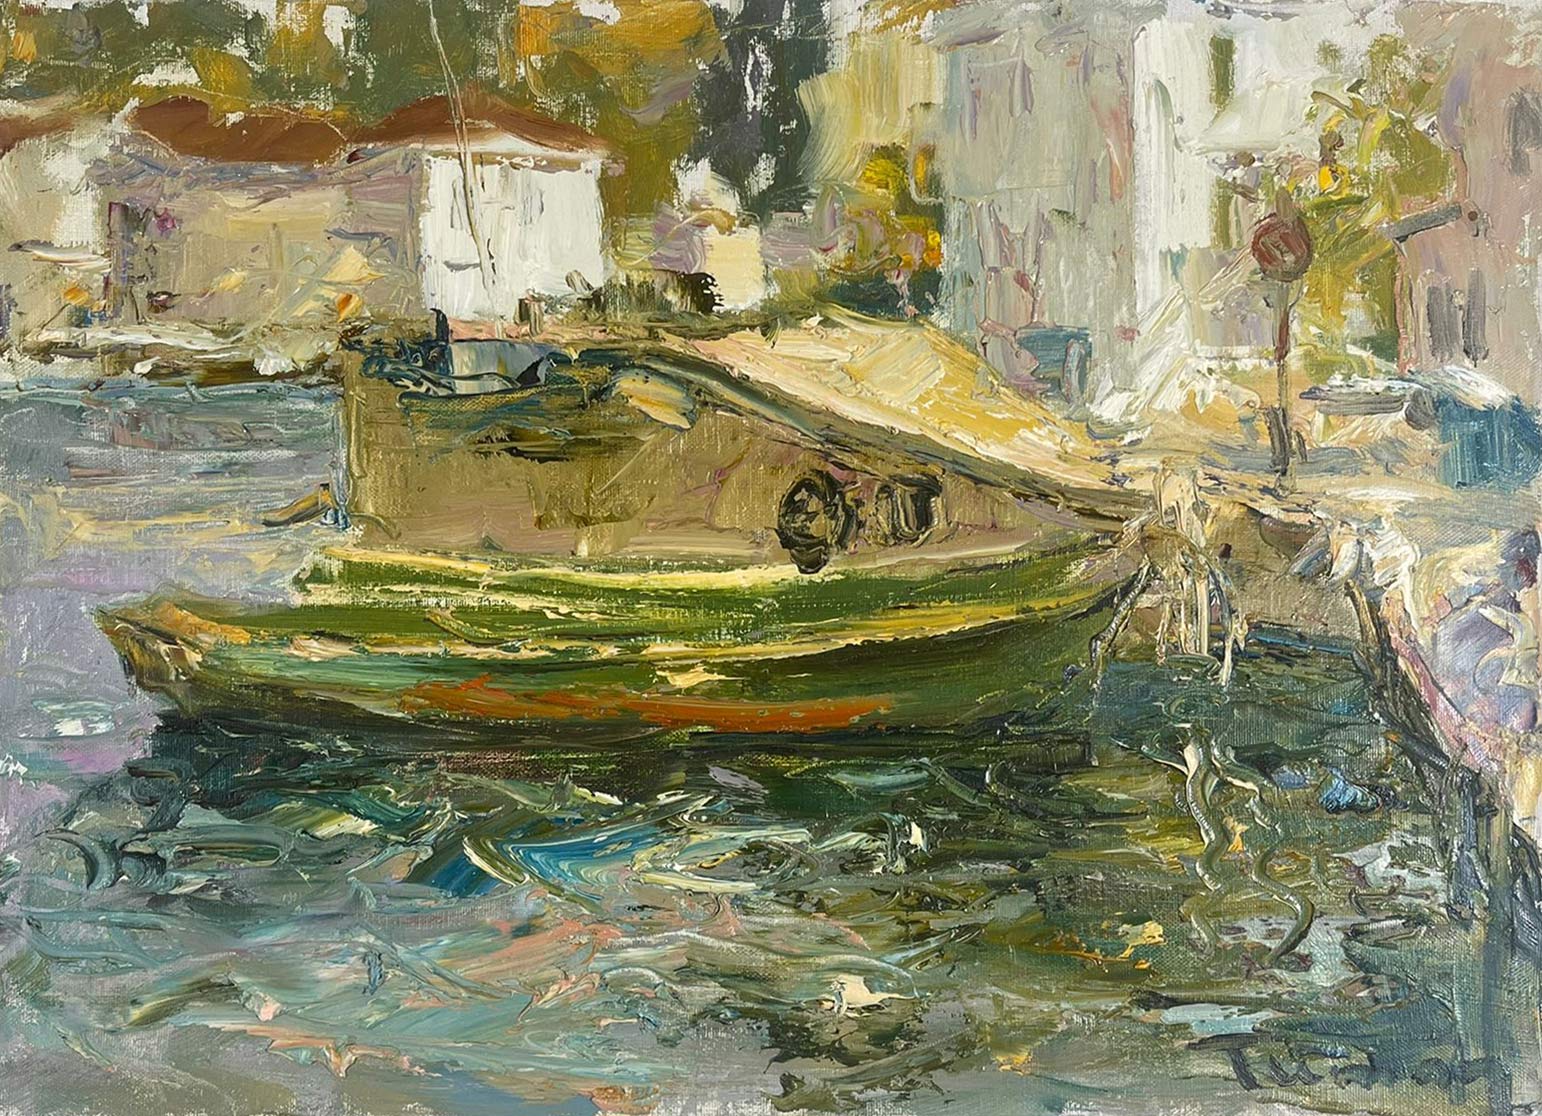 Untitled - 1, Tuman Zhumabaev, Buy the painting Oil